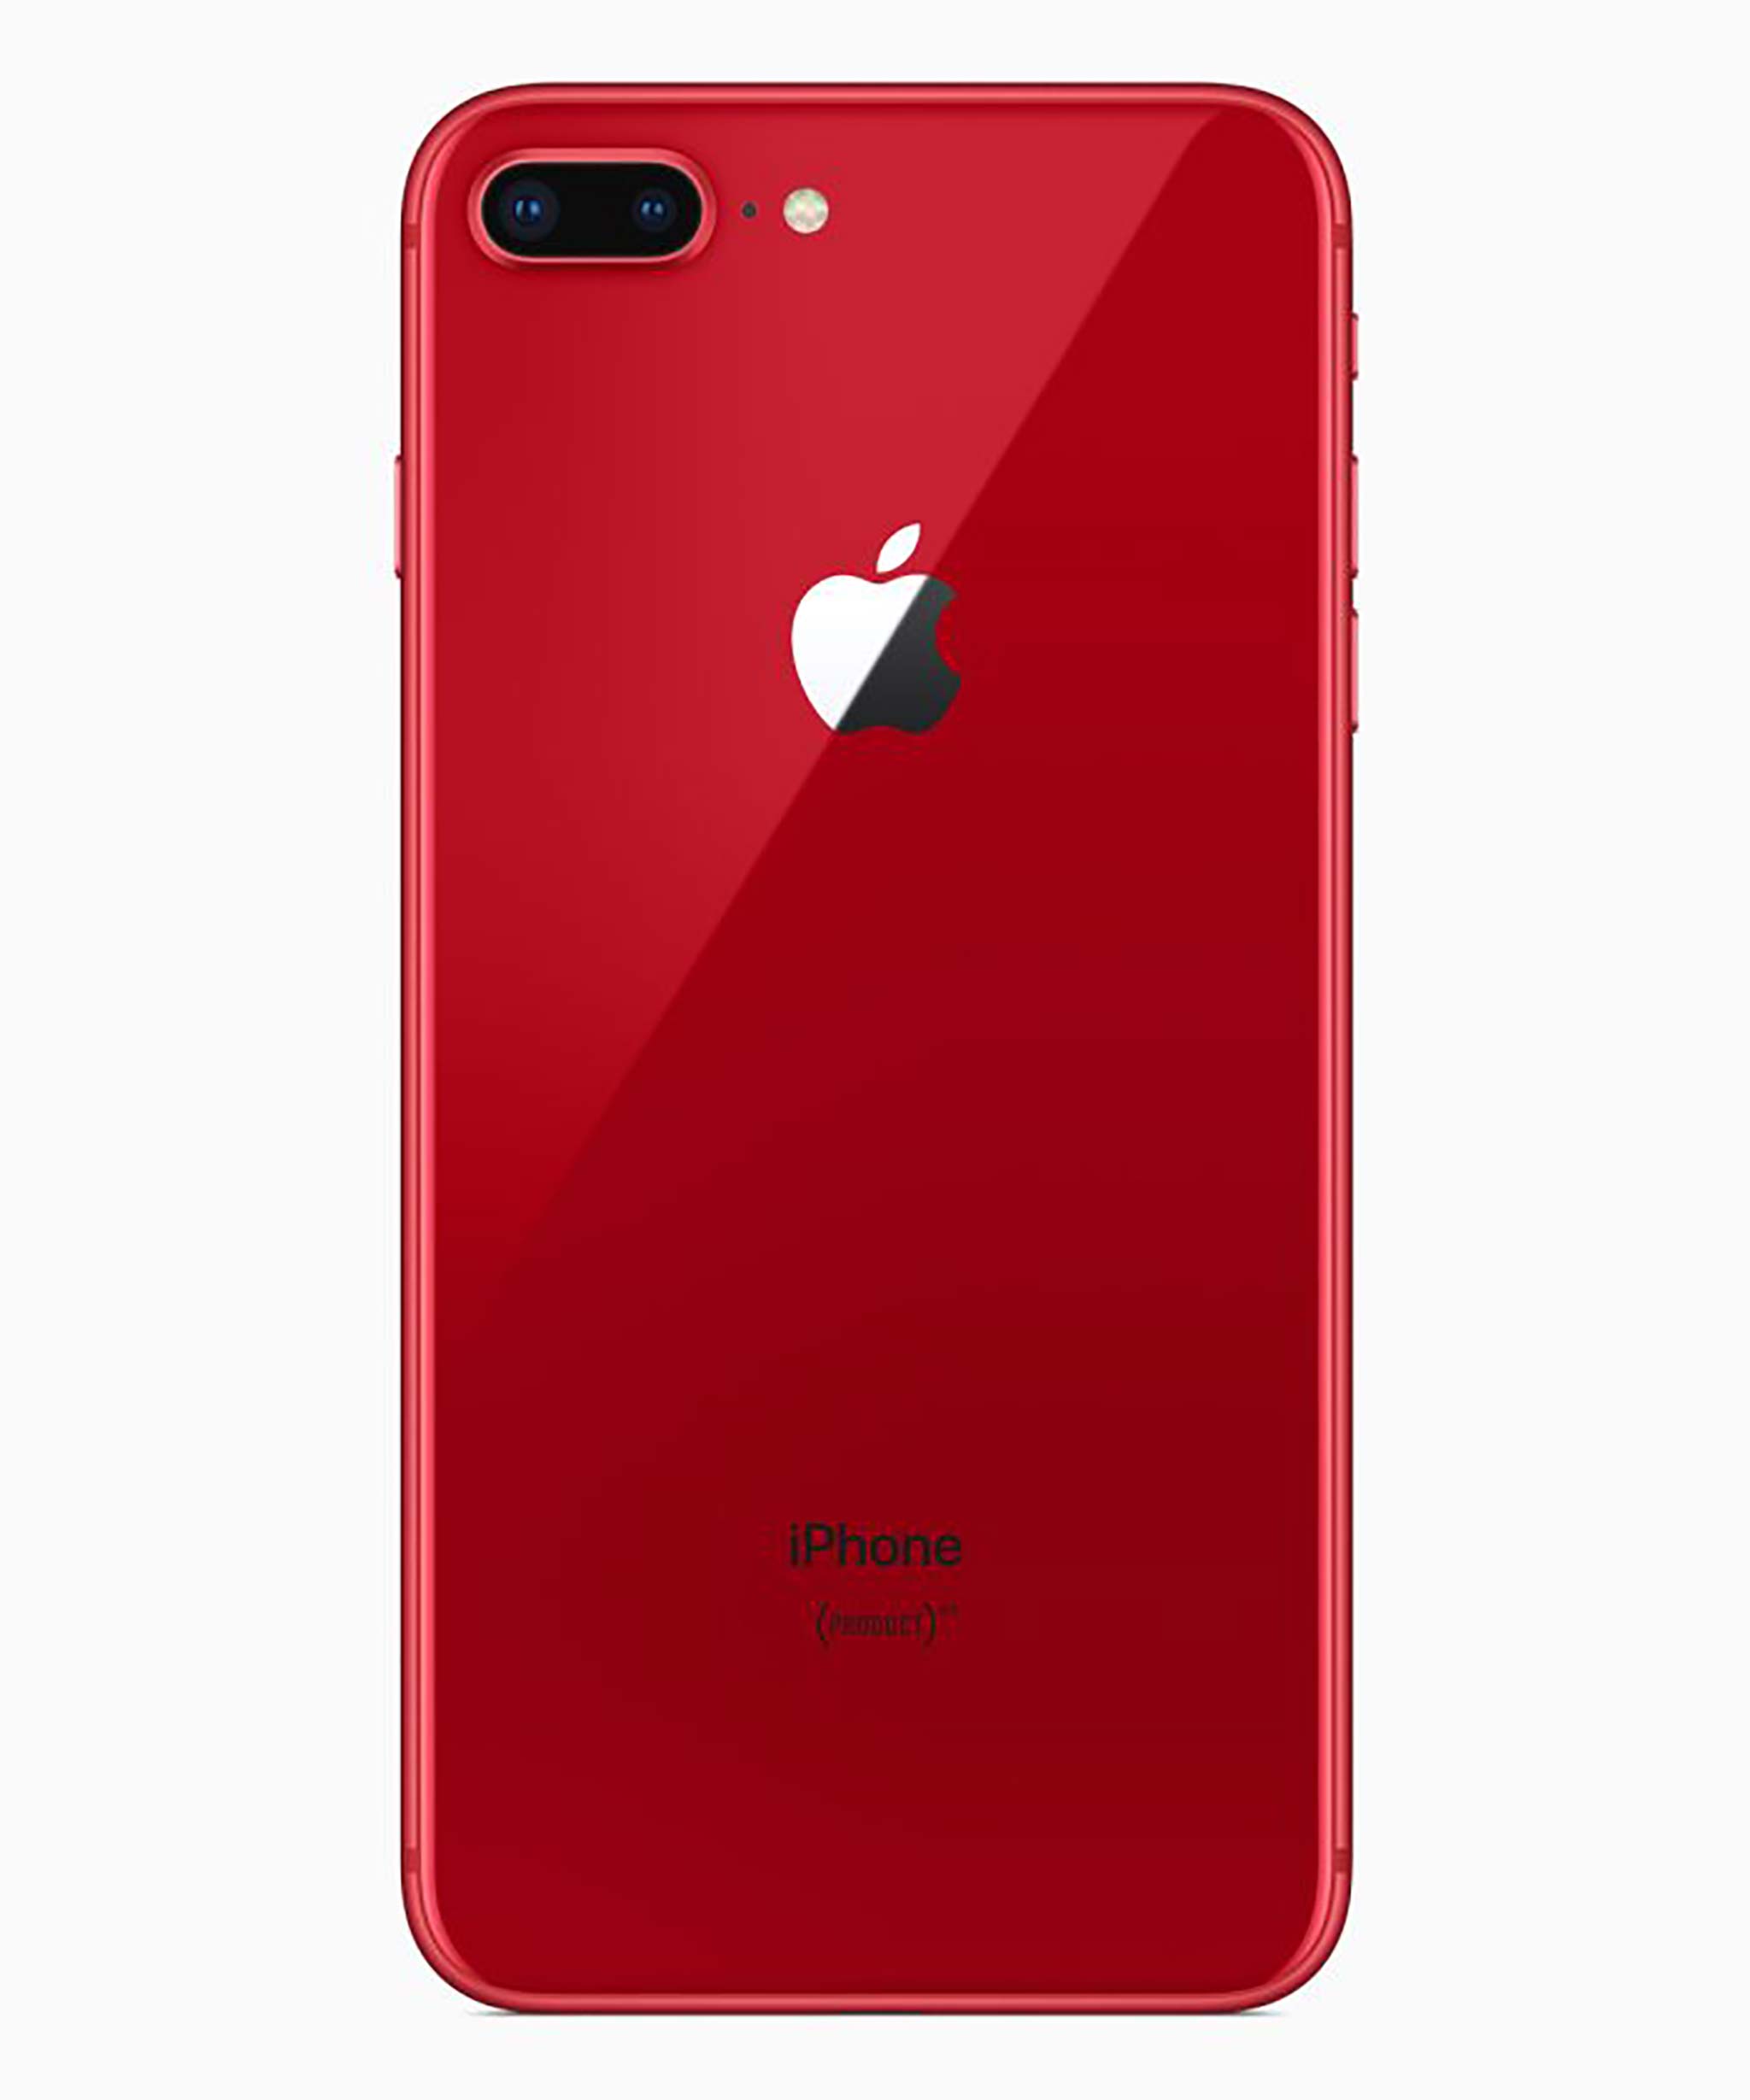 Đang tải iphone8plus-product-red_back_041018.jpg…